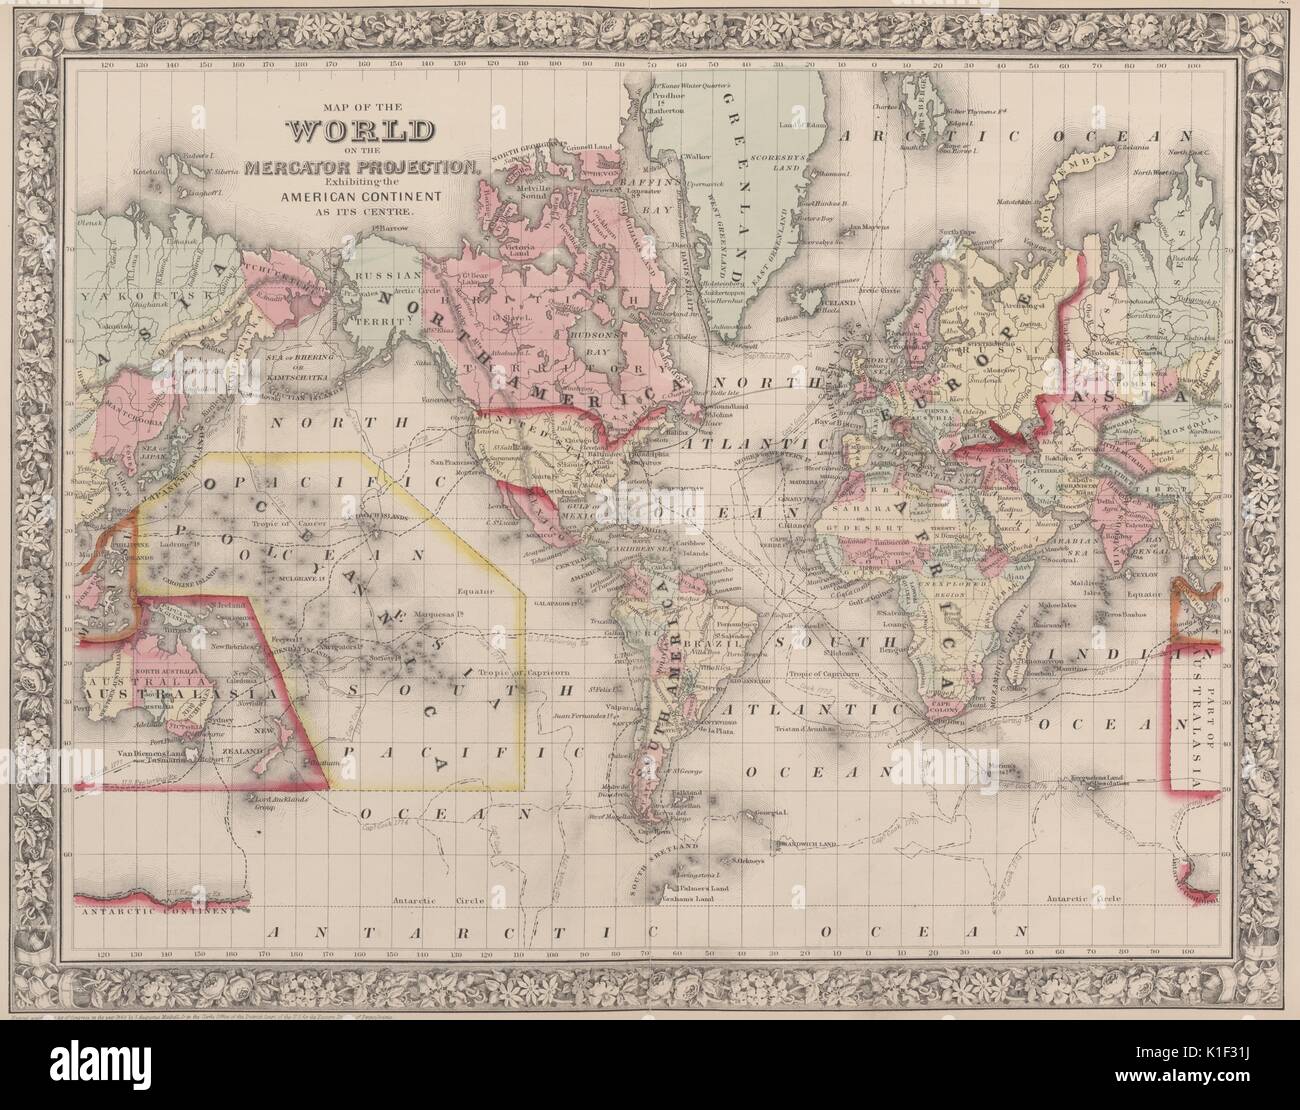 Carte du monde sur la projection de Mercator, présentant le continent américain en son centre, 1900. À partir de la Bibliothèque publique de New York. Banque D'Images